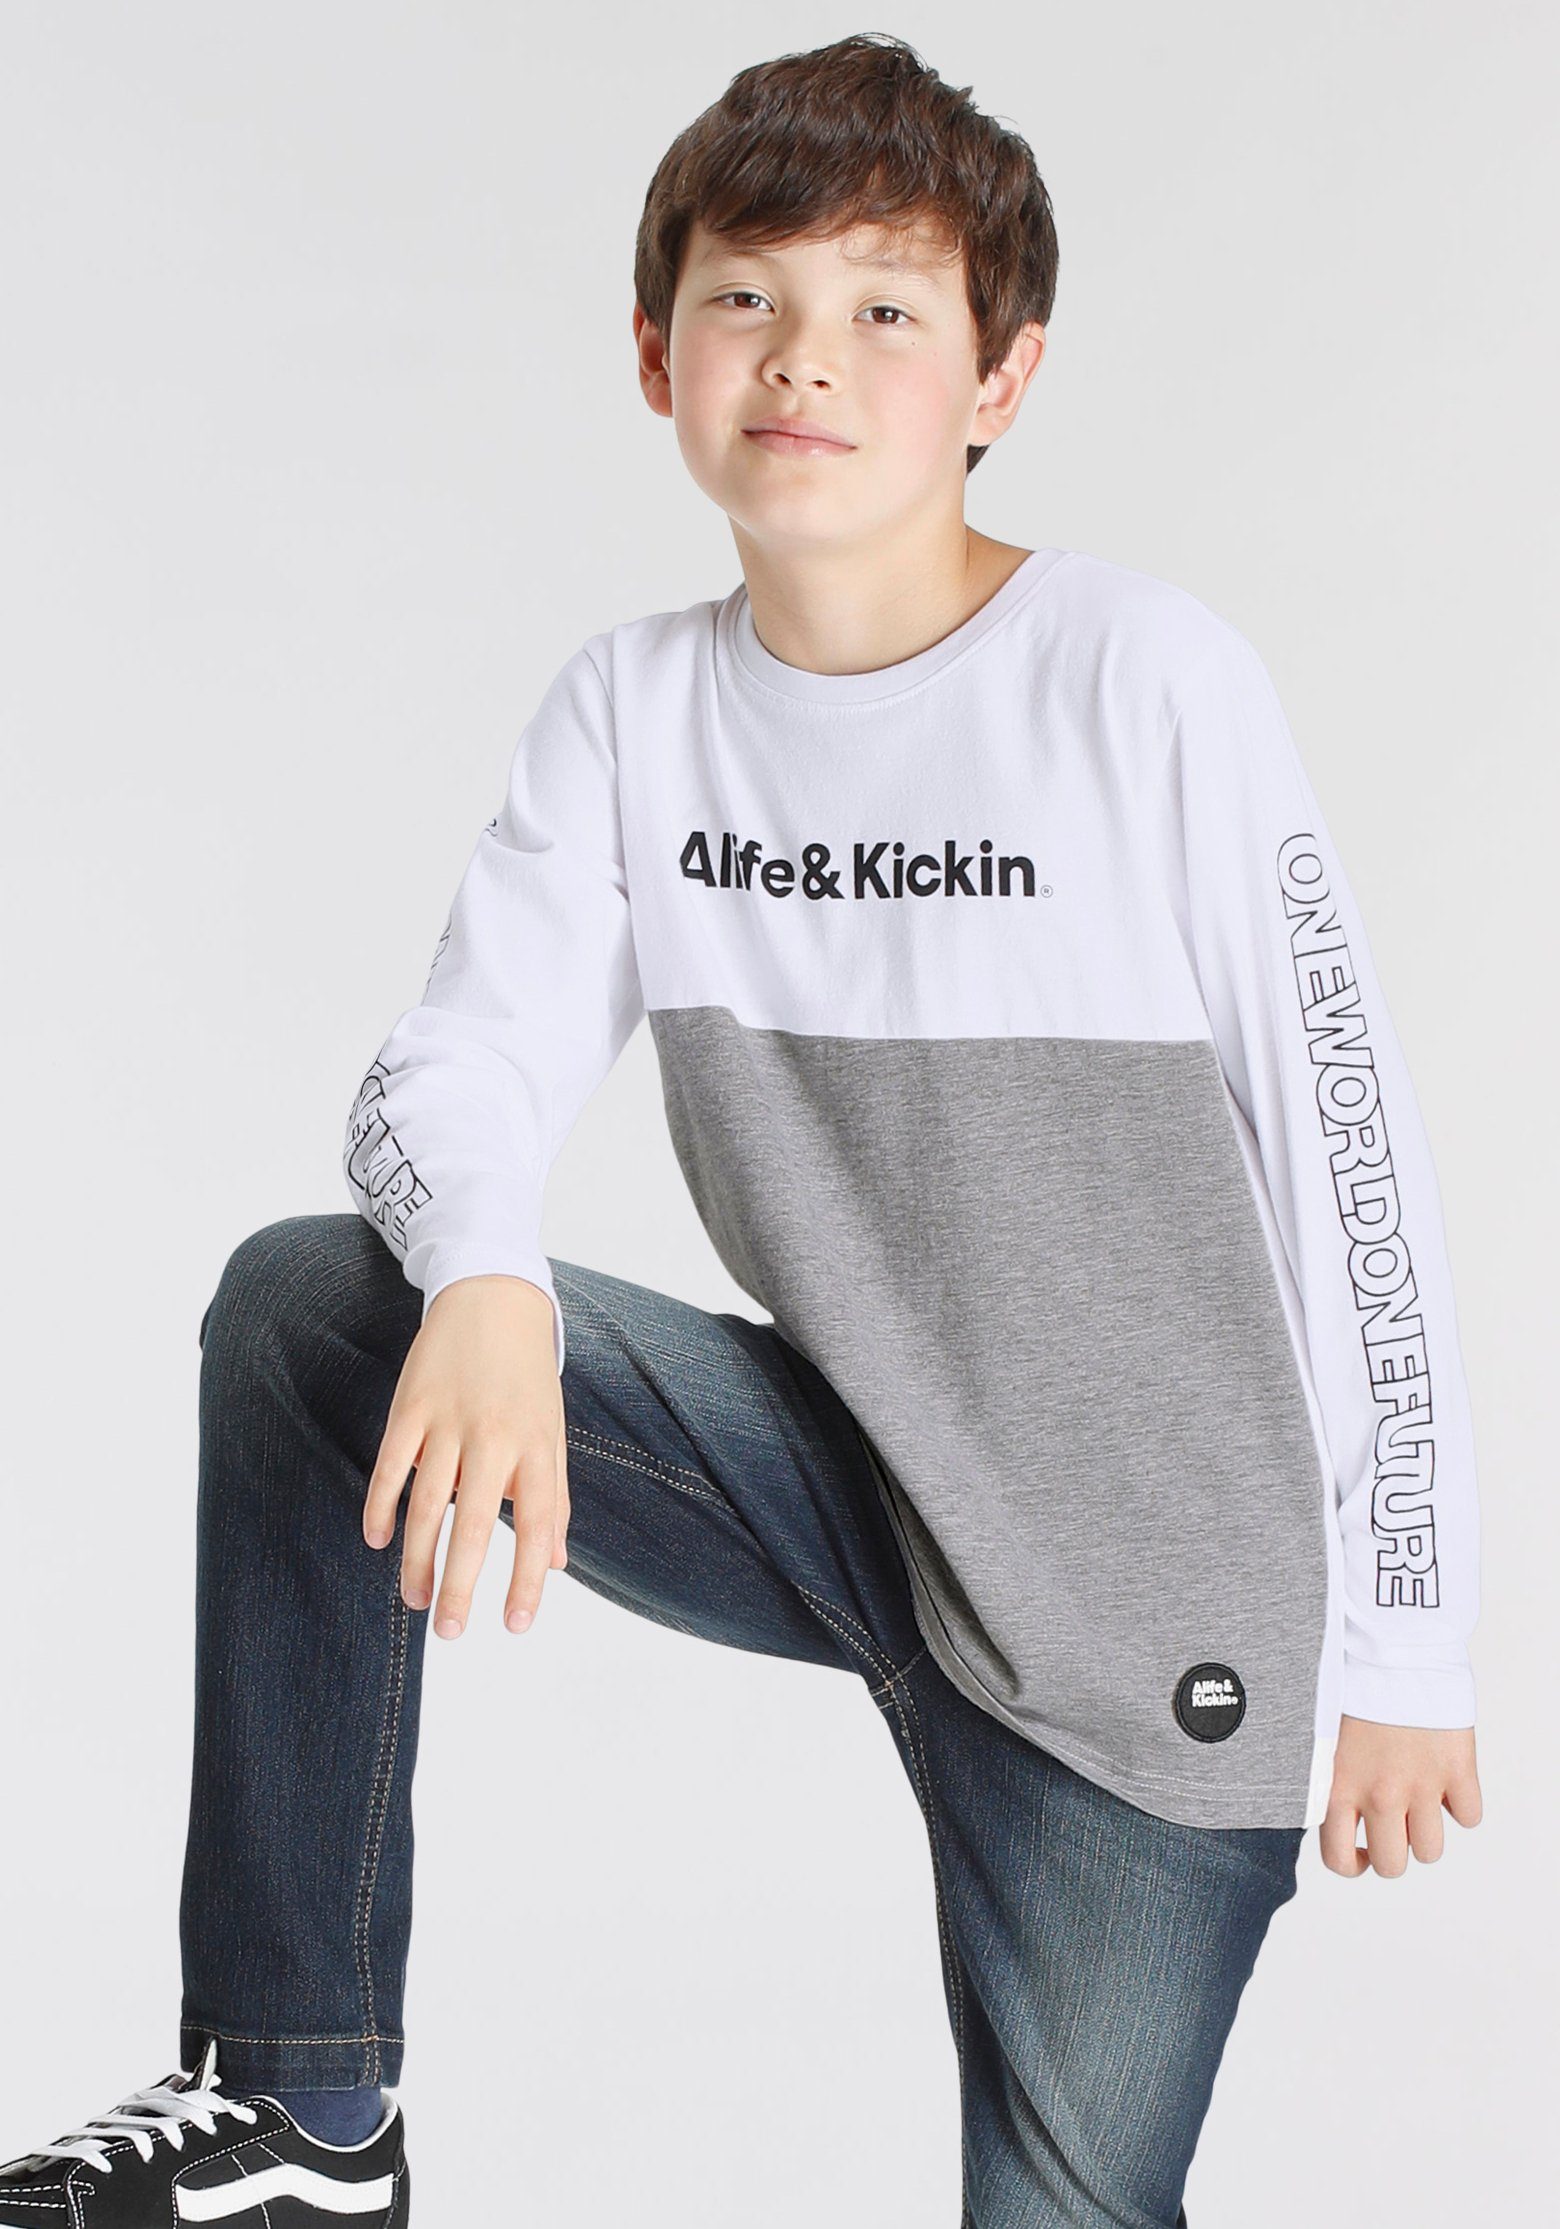 Alife & Kickin Langarmshirt in melierter Colorblocking Qualität, zweifarbig